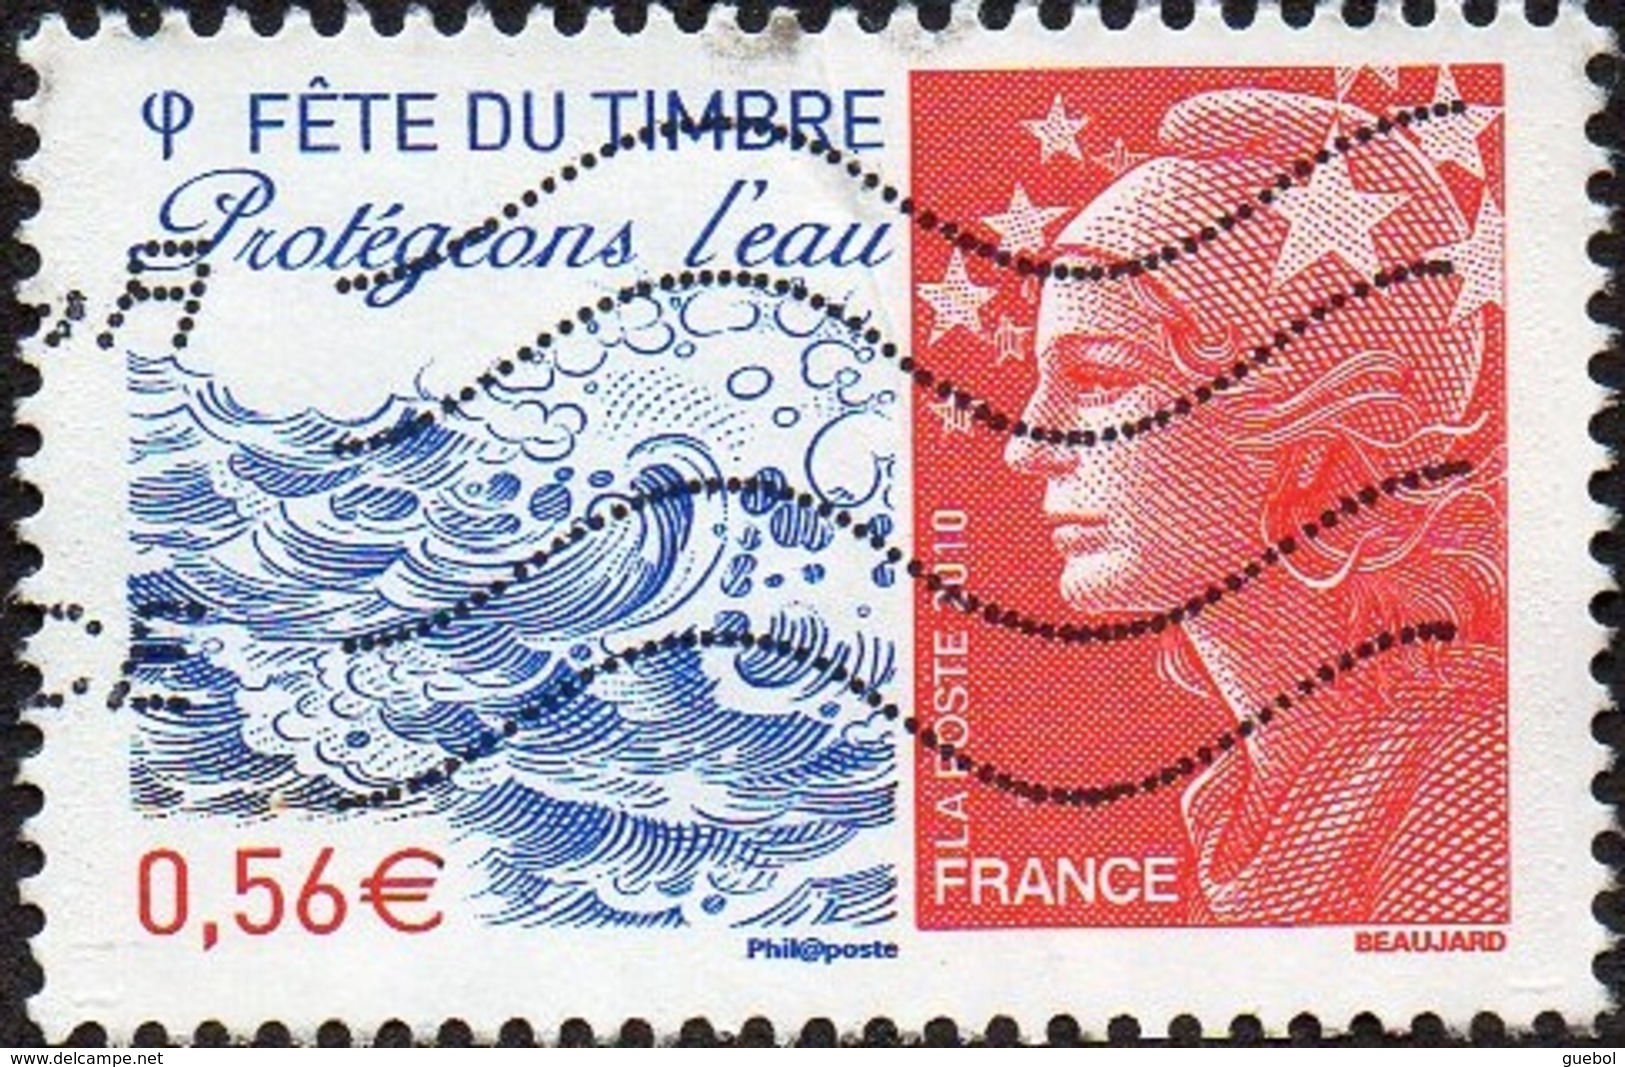 France Oblitération Moderne N° 4439 - Fête Du Timbre2010 - Protégeons L'eau - Marianne De Beaujard - Oblitérés